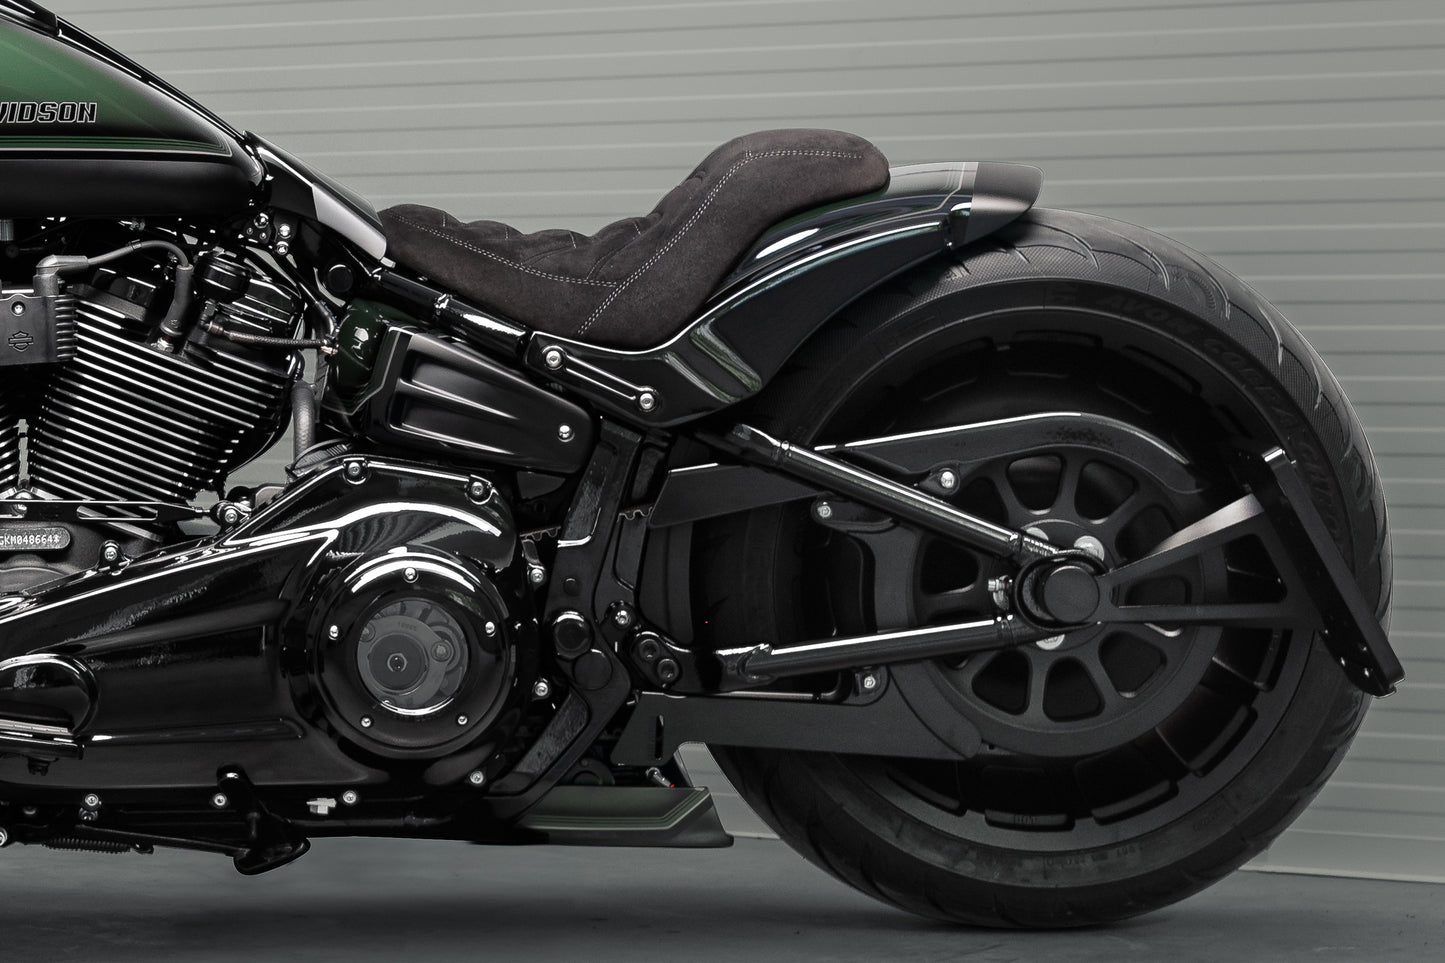 Zoomed Harley Davidson motorcycle with Killer Custom "Avenger" rear fender kit from the side